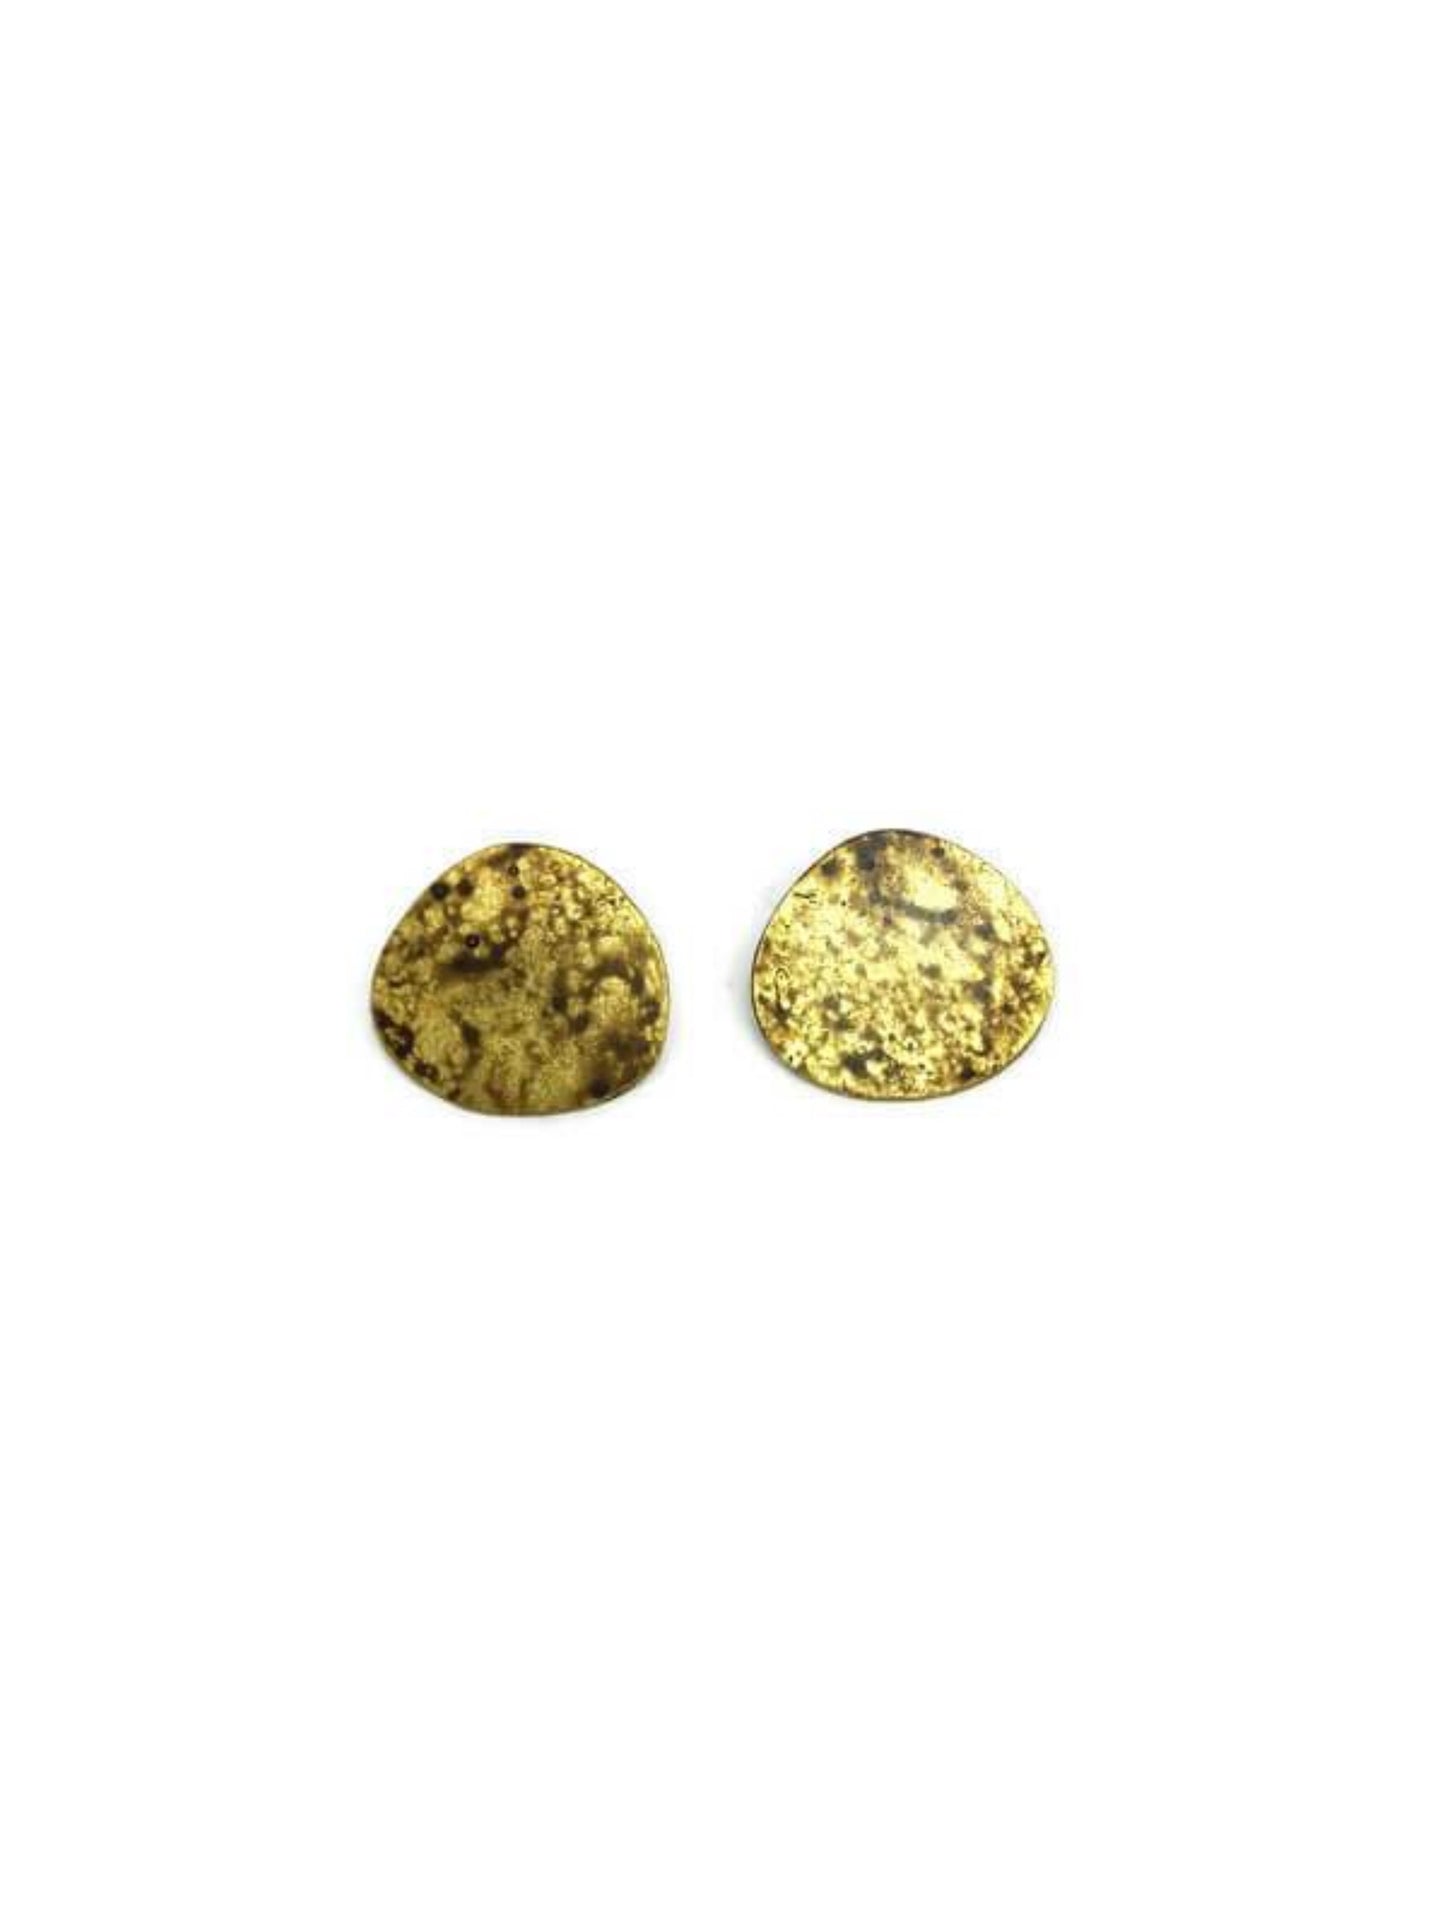  Oxidized brass earrings | Yellow - Black Dots Earrings - CURIUDO